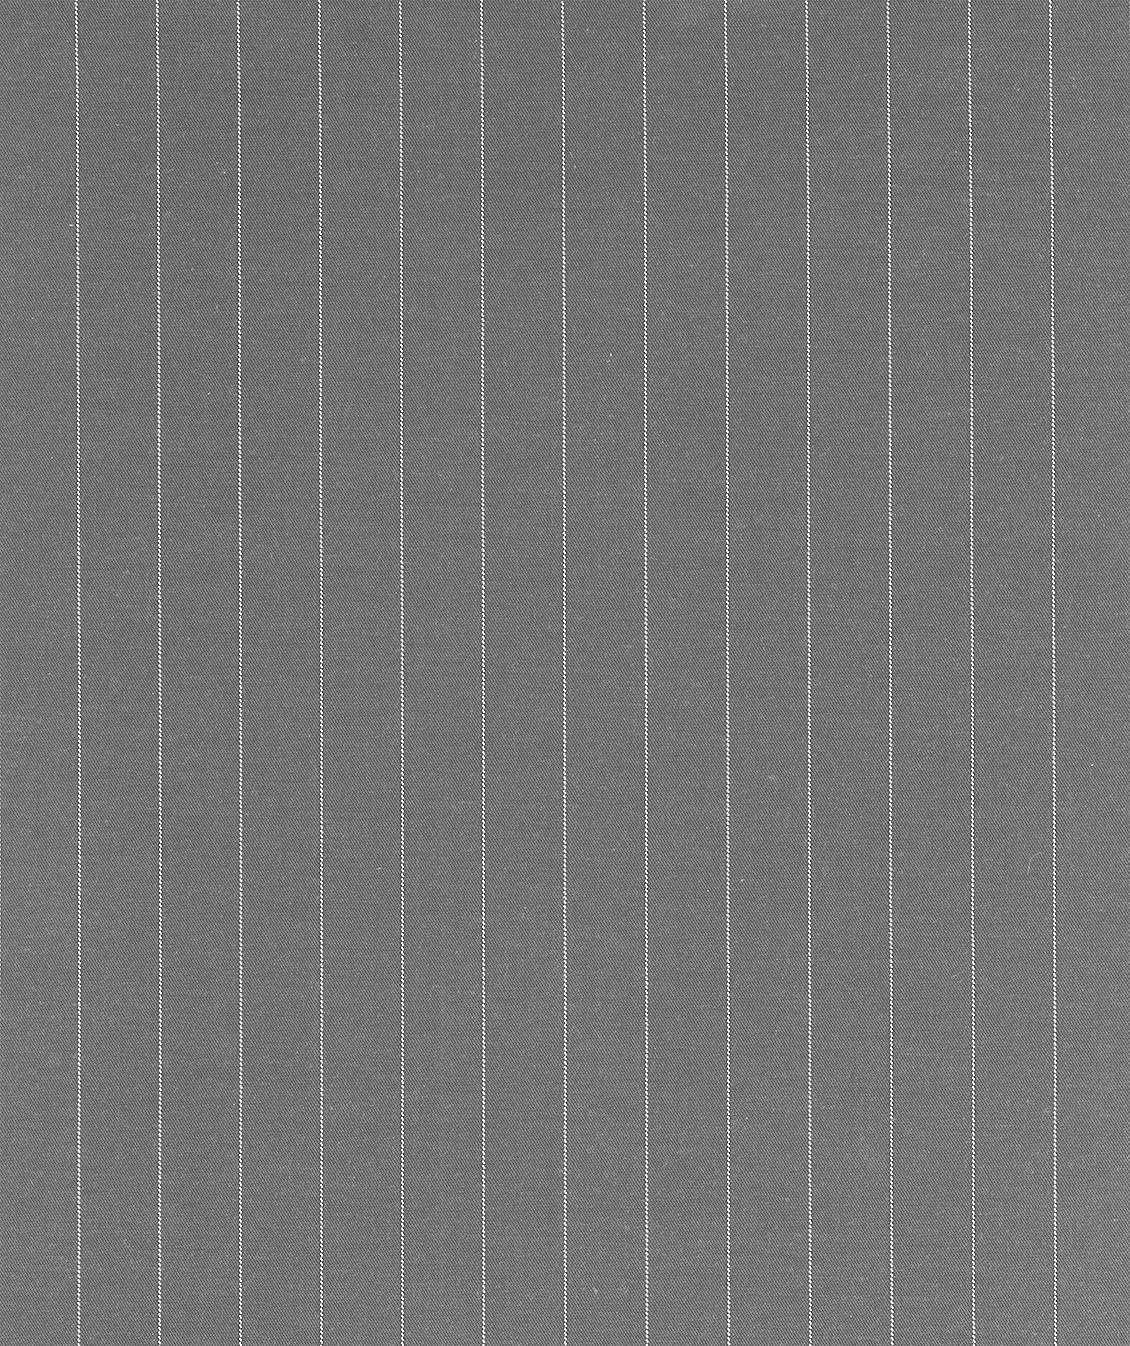 Carta da parati tessuto gessato, righe bianche su fondo grigio chiaro, effetto tessuto